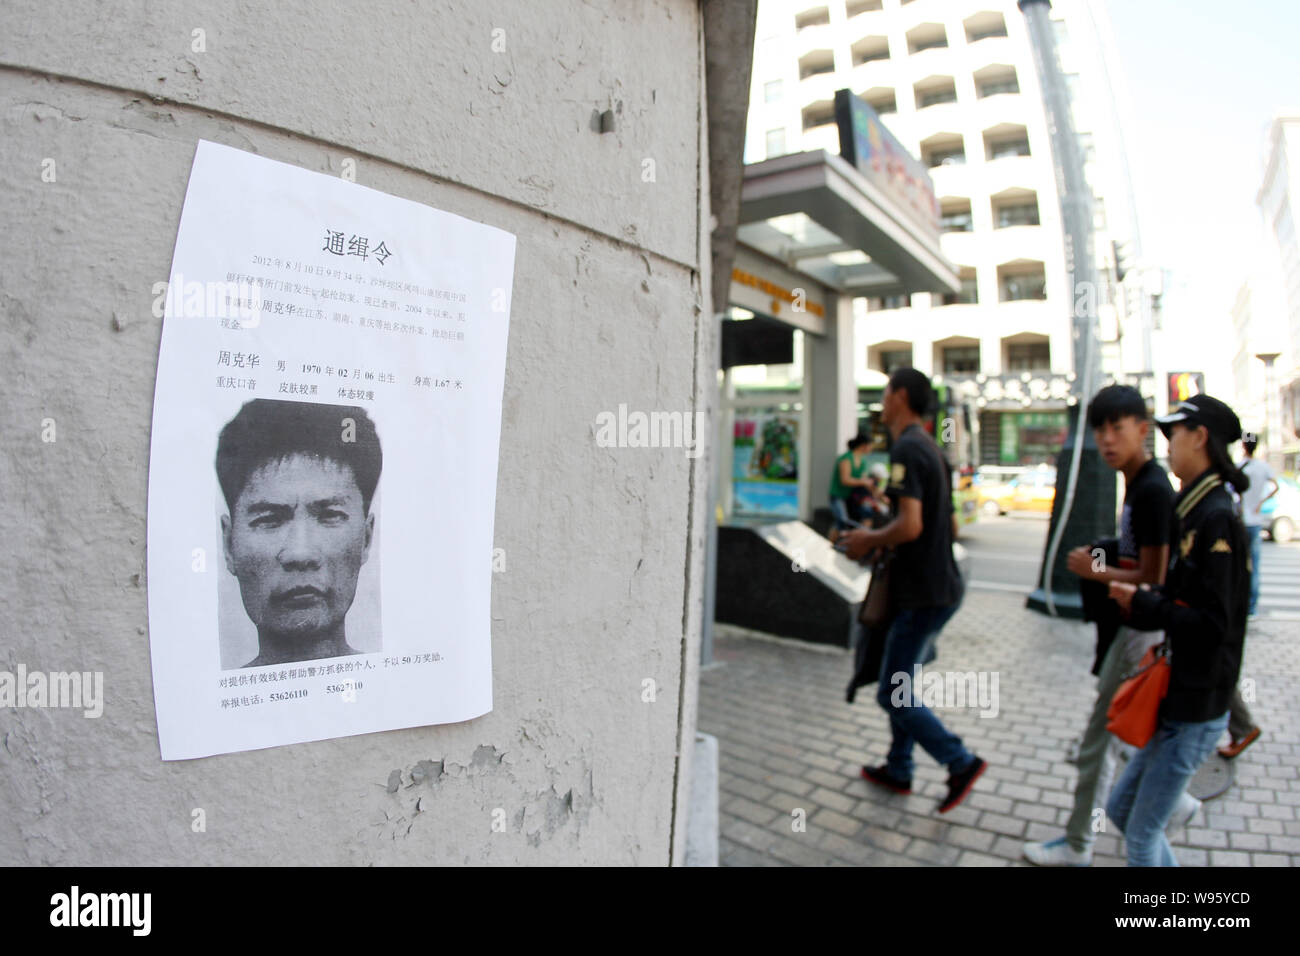 Les piétons à pied passé un avis de la police de la chasse à l'homme d'être un tueur en série Zhou Kehua à Harbin City, Heilongjiang province nord-est de Chines, 13 août 20 Banque D'Images